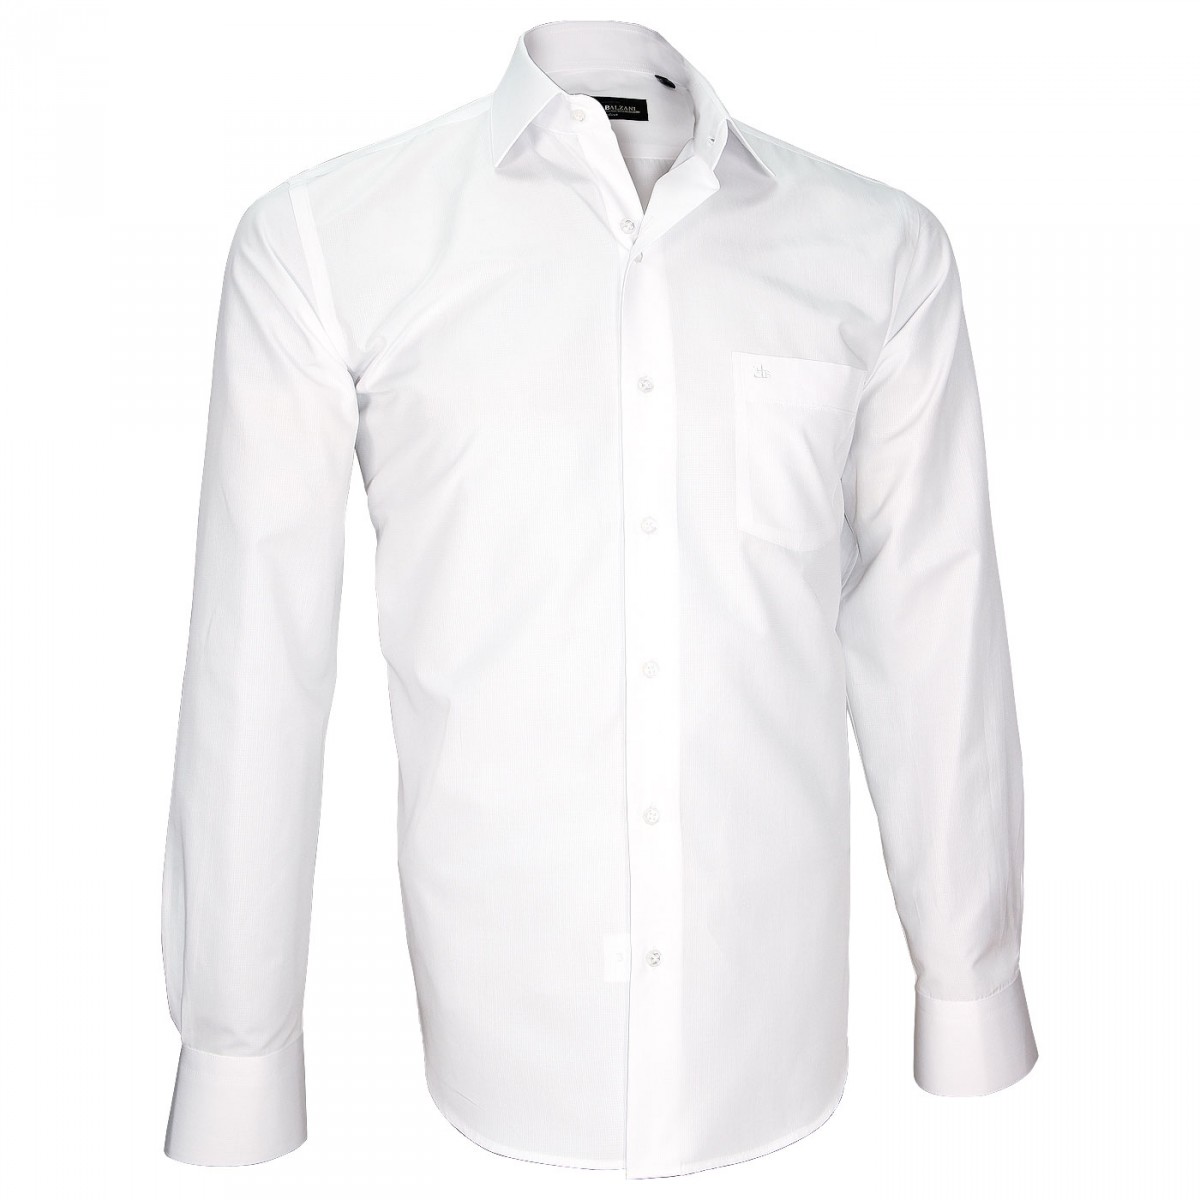 white shirt in seersucker fabric